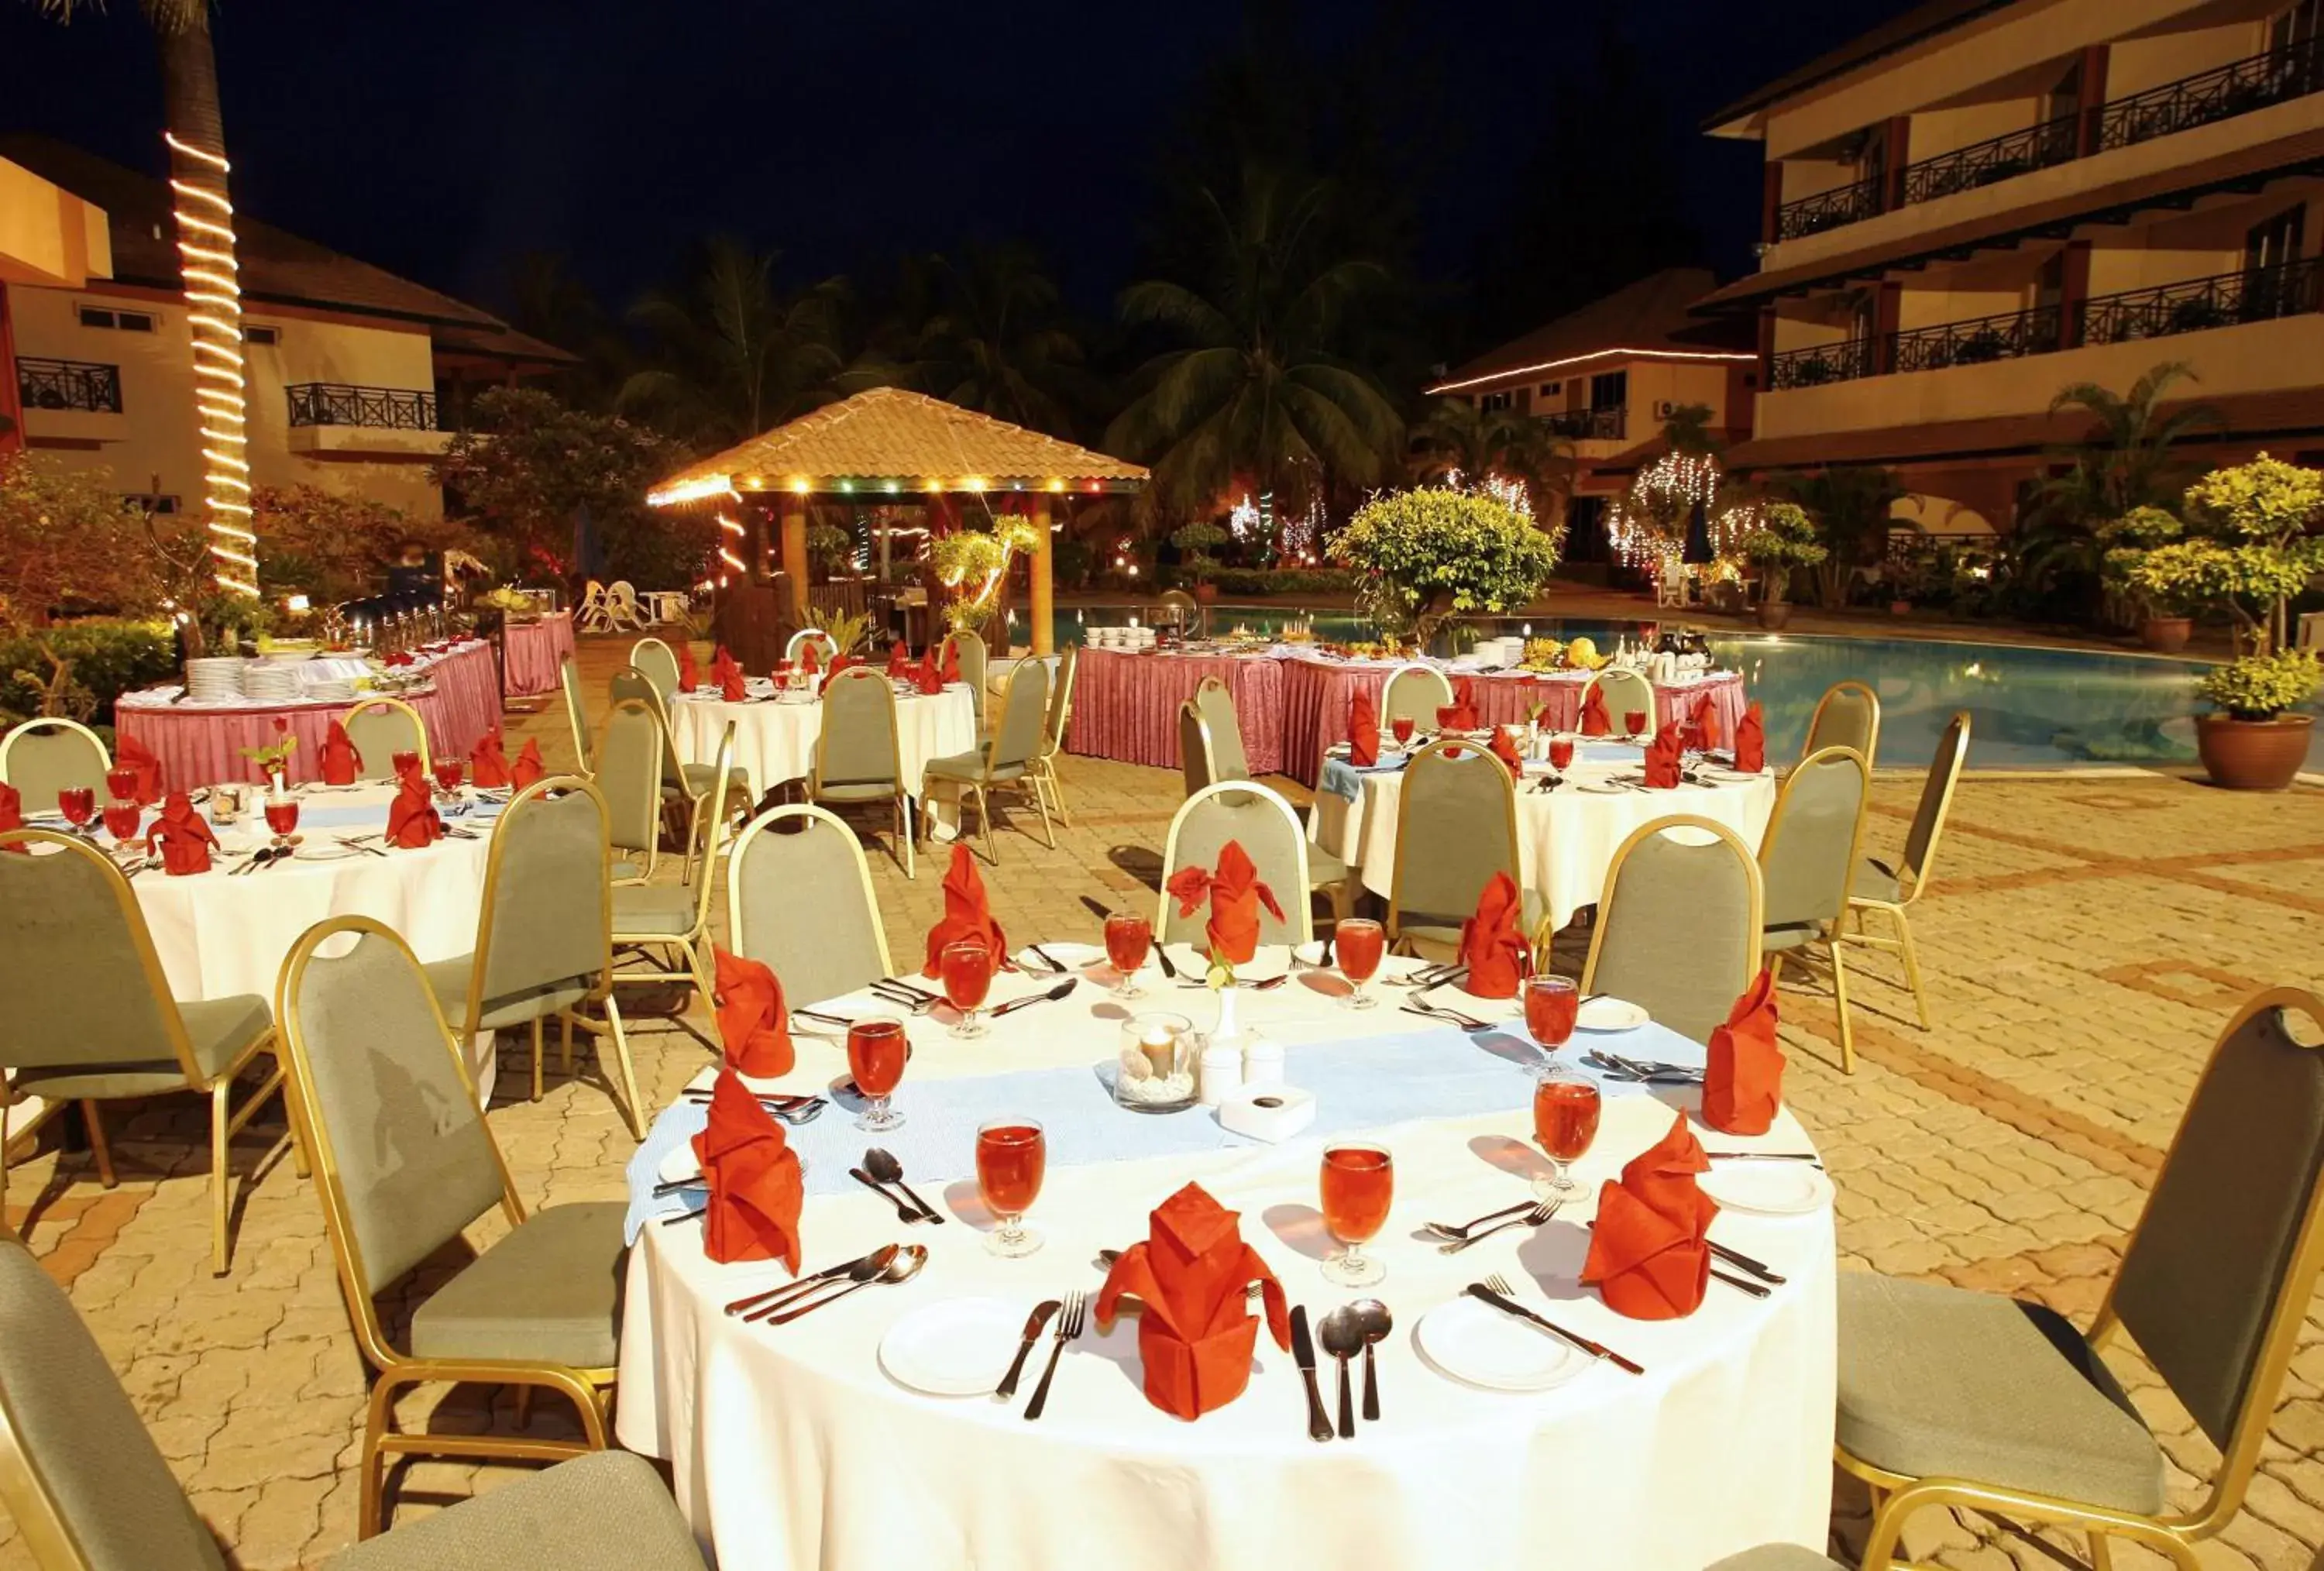 Banquet/Function facilities, Banquet Facilities in The Qamar Paka Resort